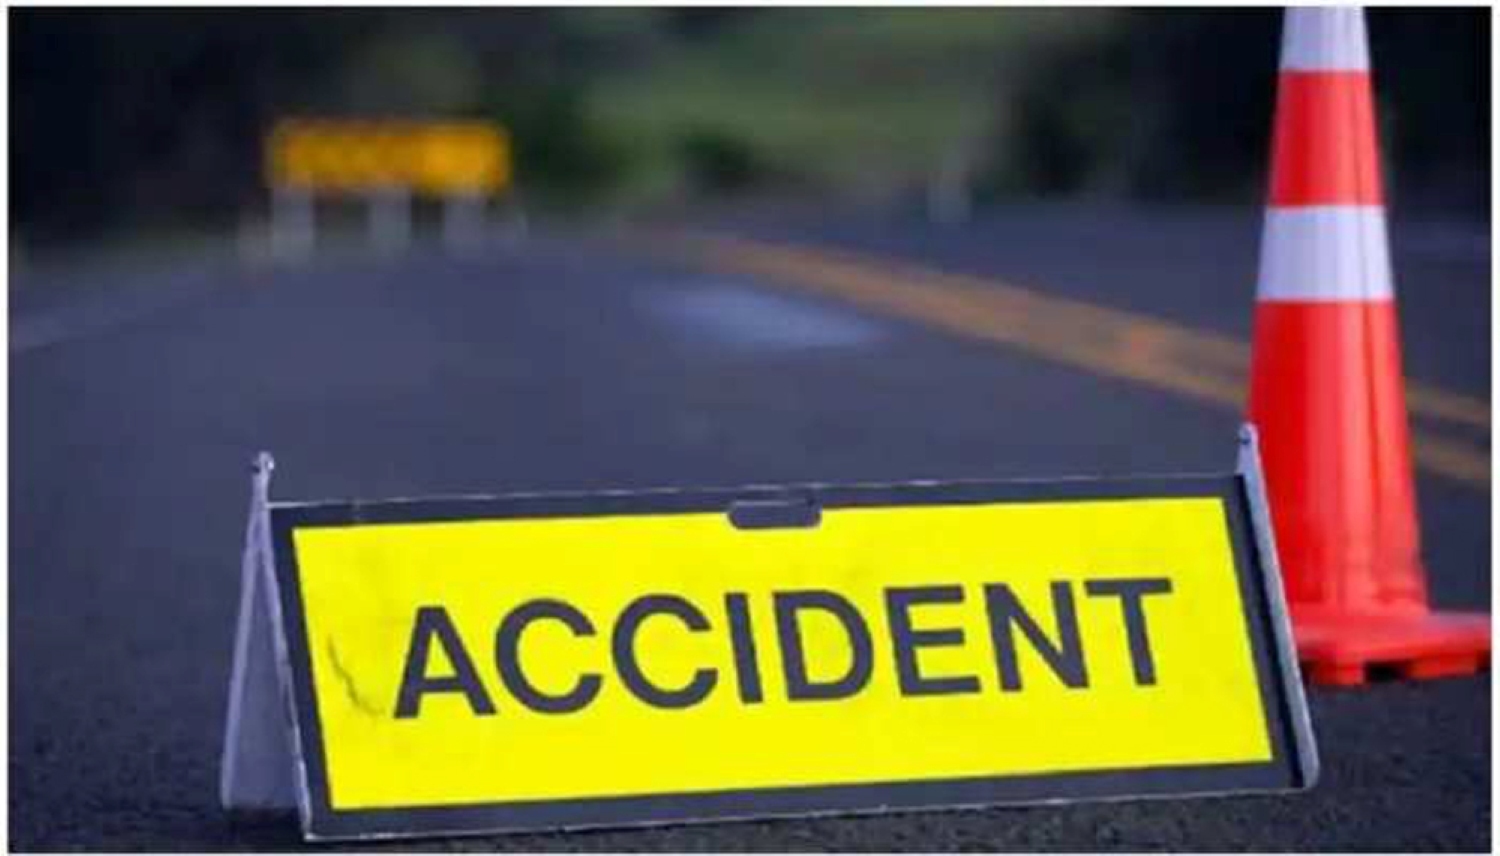 इंदौर में बड़ा सड़क हादसा, अज्ञात वाहन से टक्कर में जीप के उड़े परखच्चे, 8 लोगों की मौत